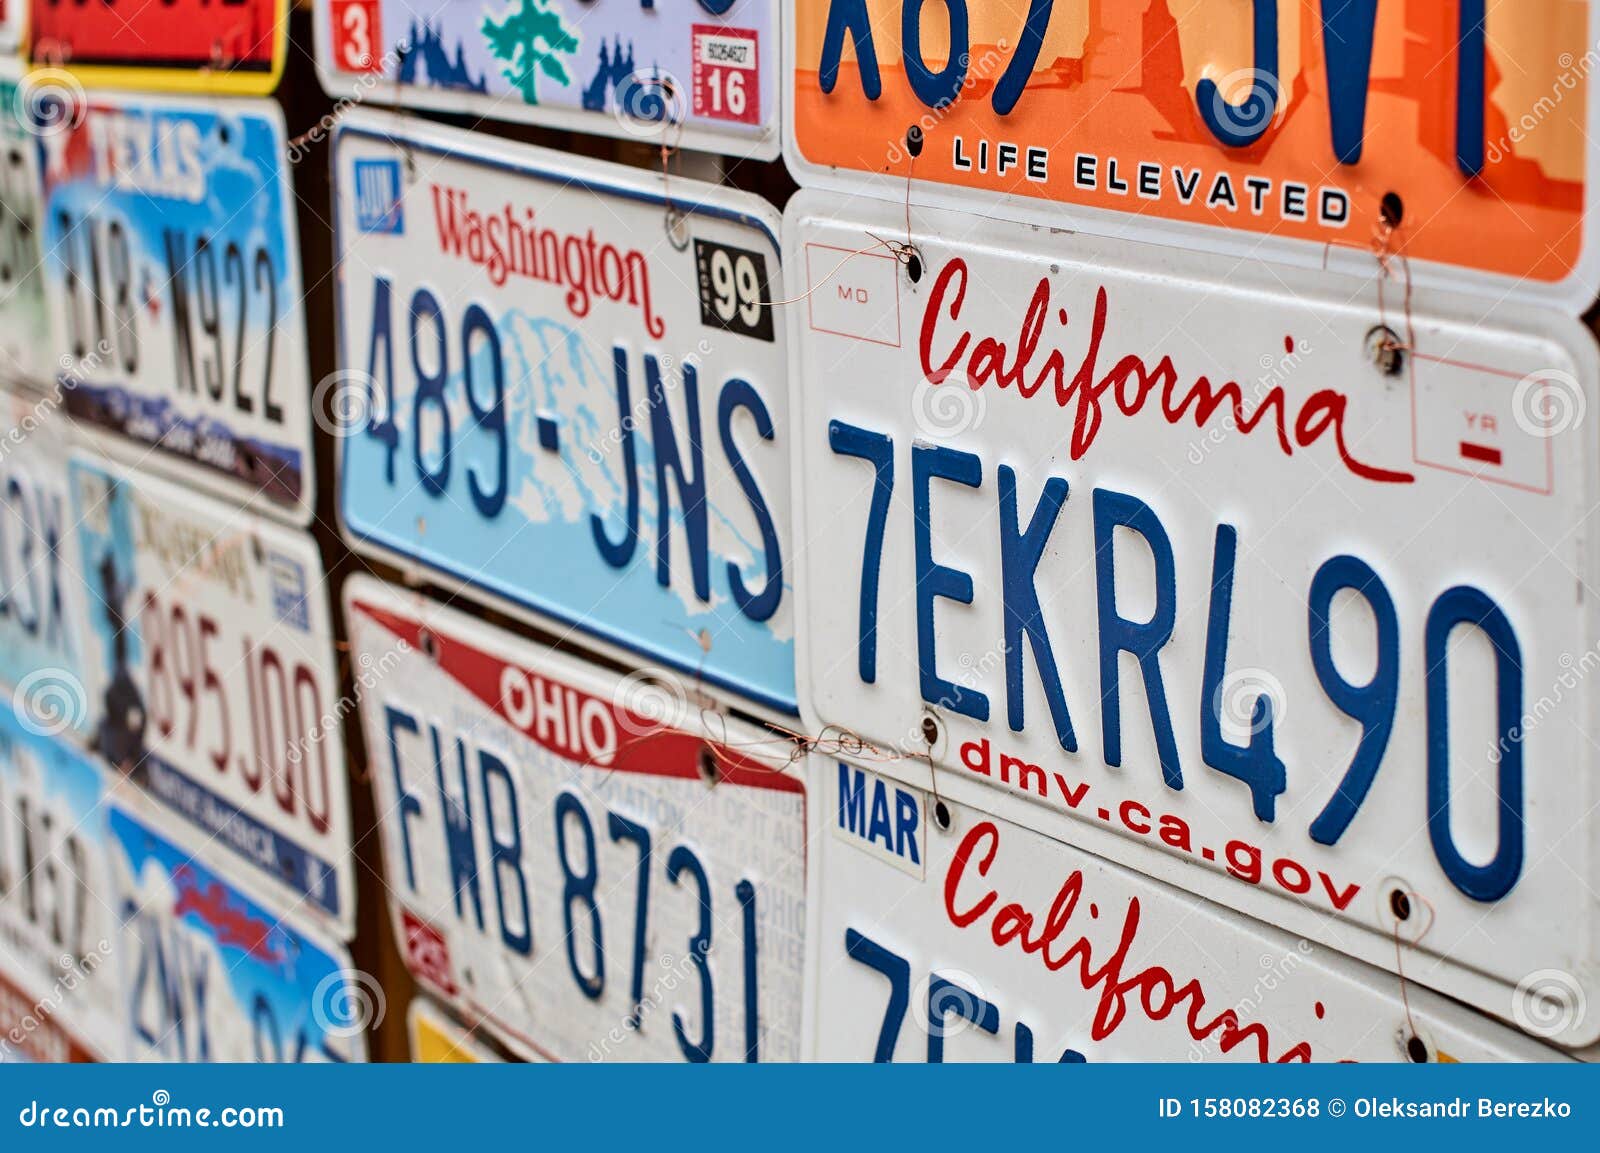 Oude Afgebroken Van Auto's of Voertuigregistratienummers Van Verschillende Amerikaanse Staten Zoals Californië Redactionele Stock Foto - Image vergunning, 158082368